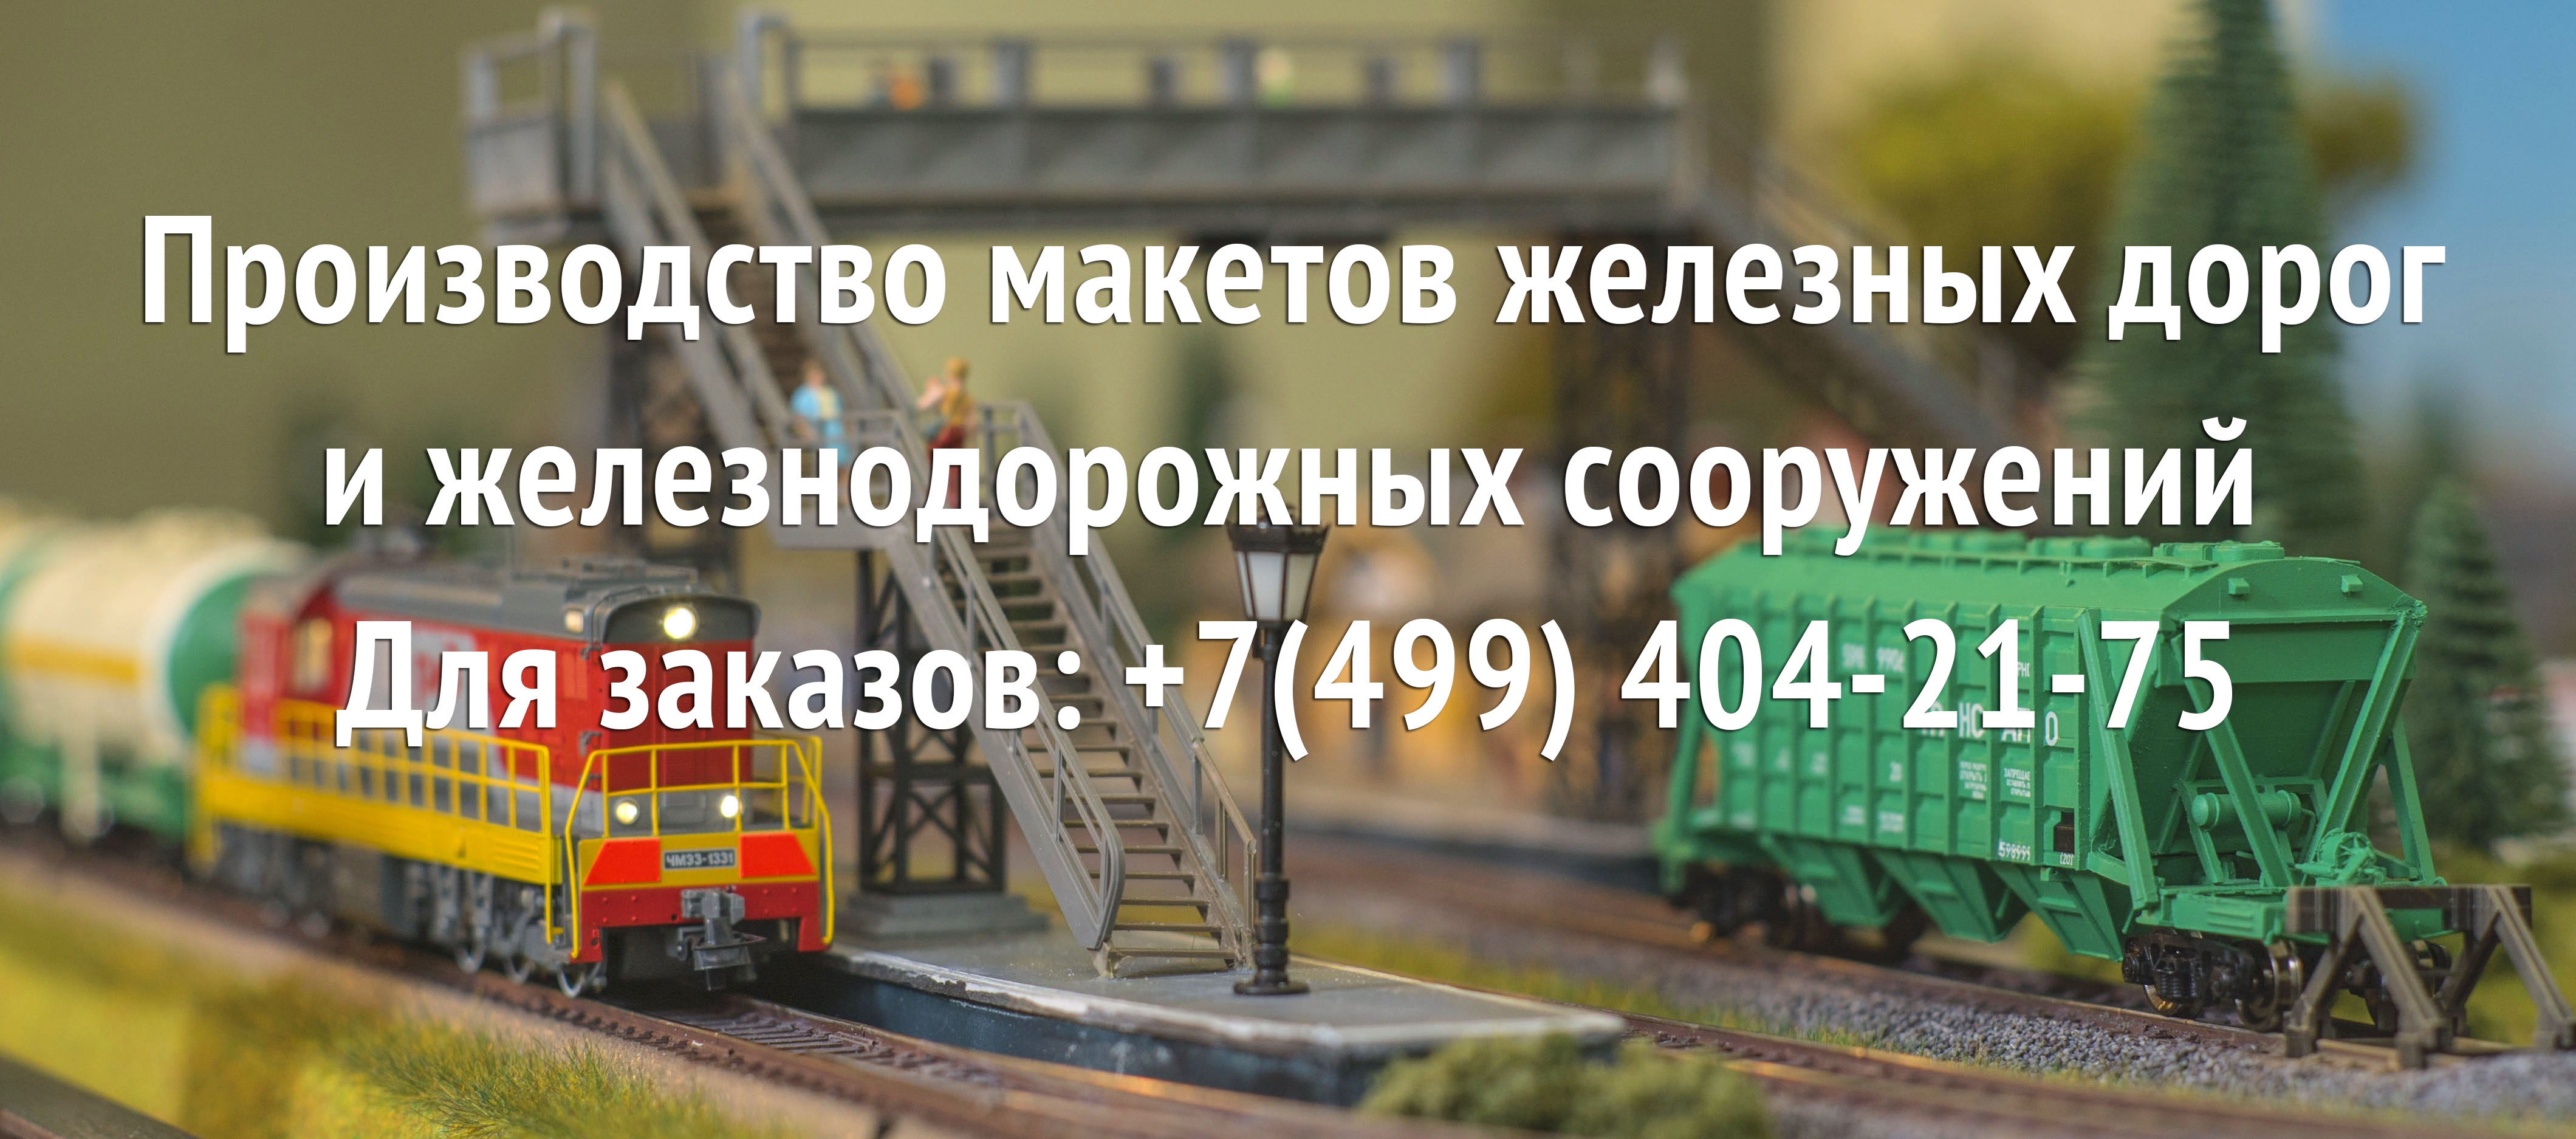 Сборные масштабные модели железной дороги в Москве, цены, купить в интернет-магазине Armata-Models